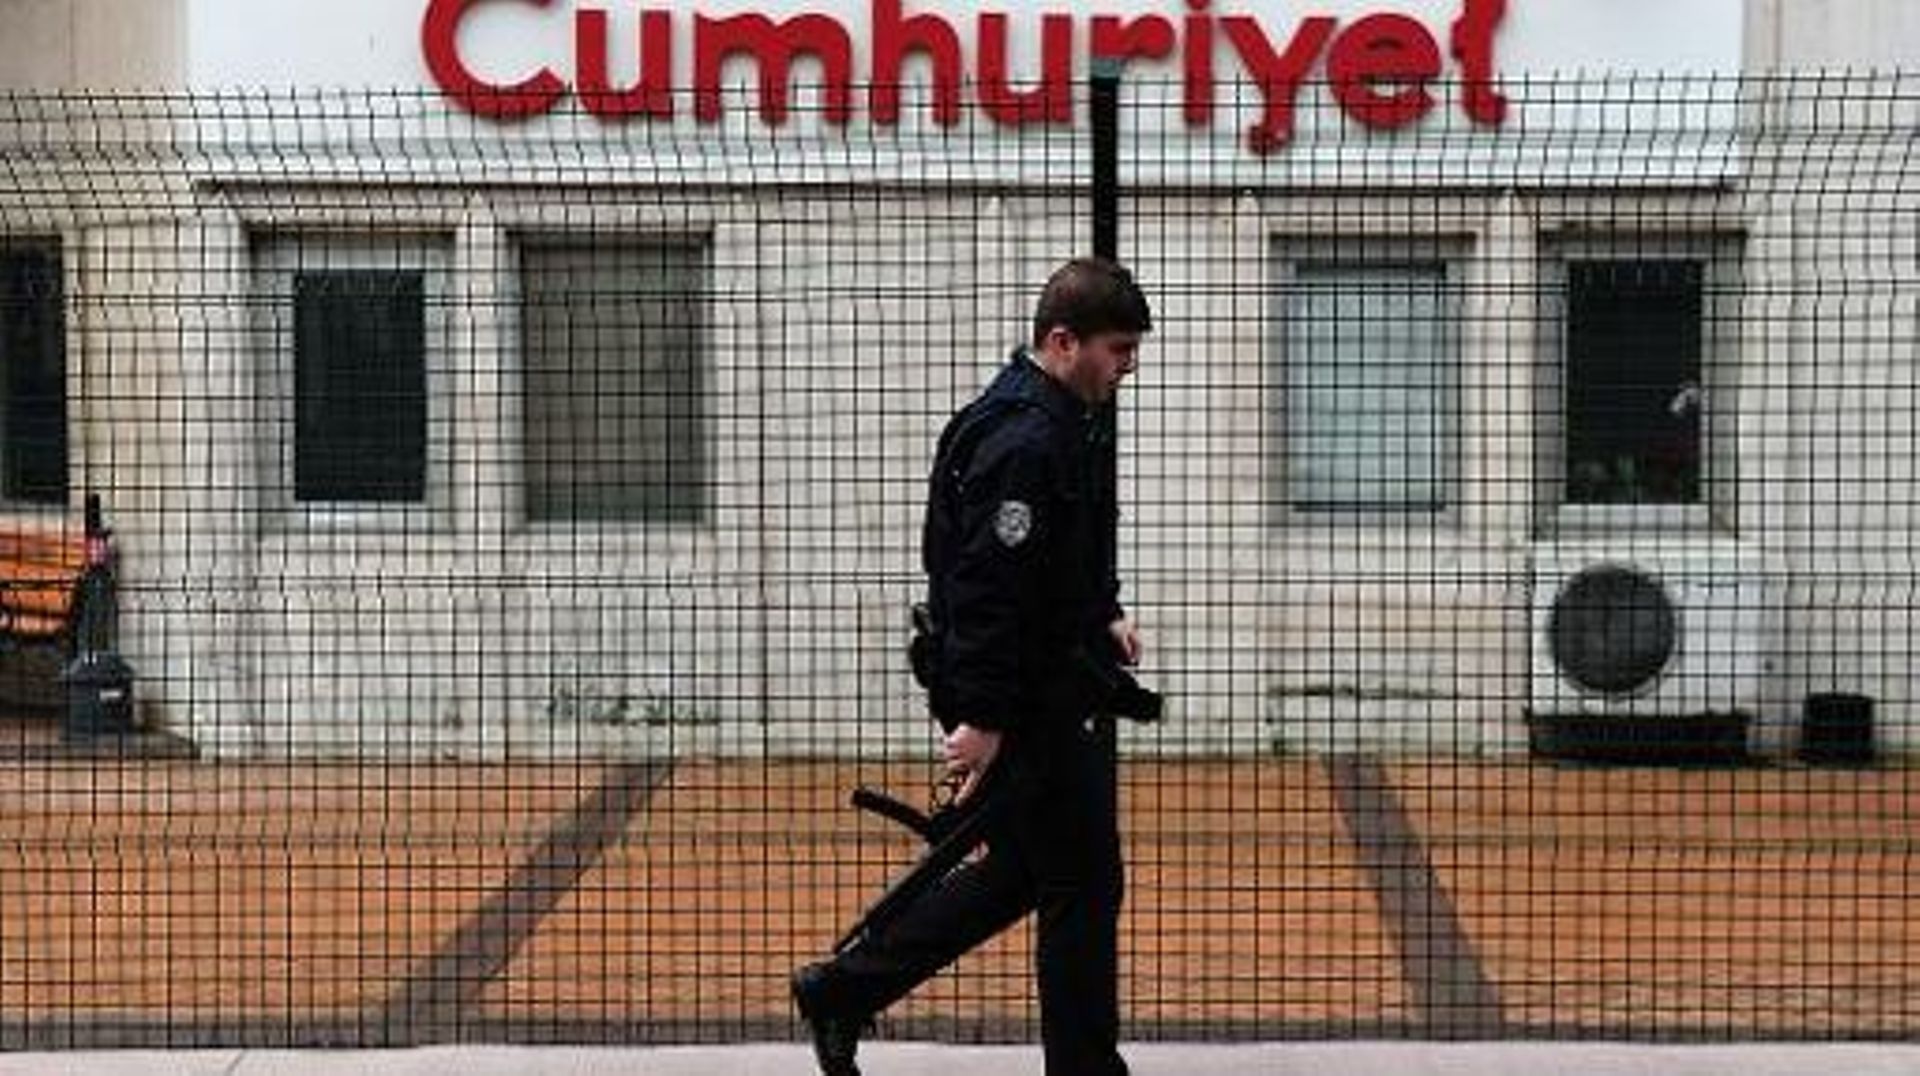 Un policier devant le siège du quotidien Cumhuriyet à Istanbul, le 14 janvier 2015